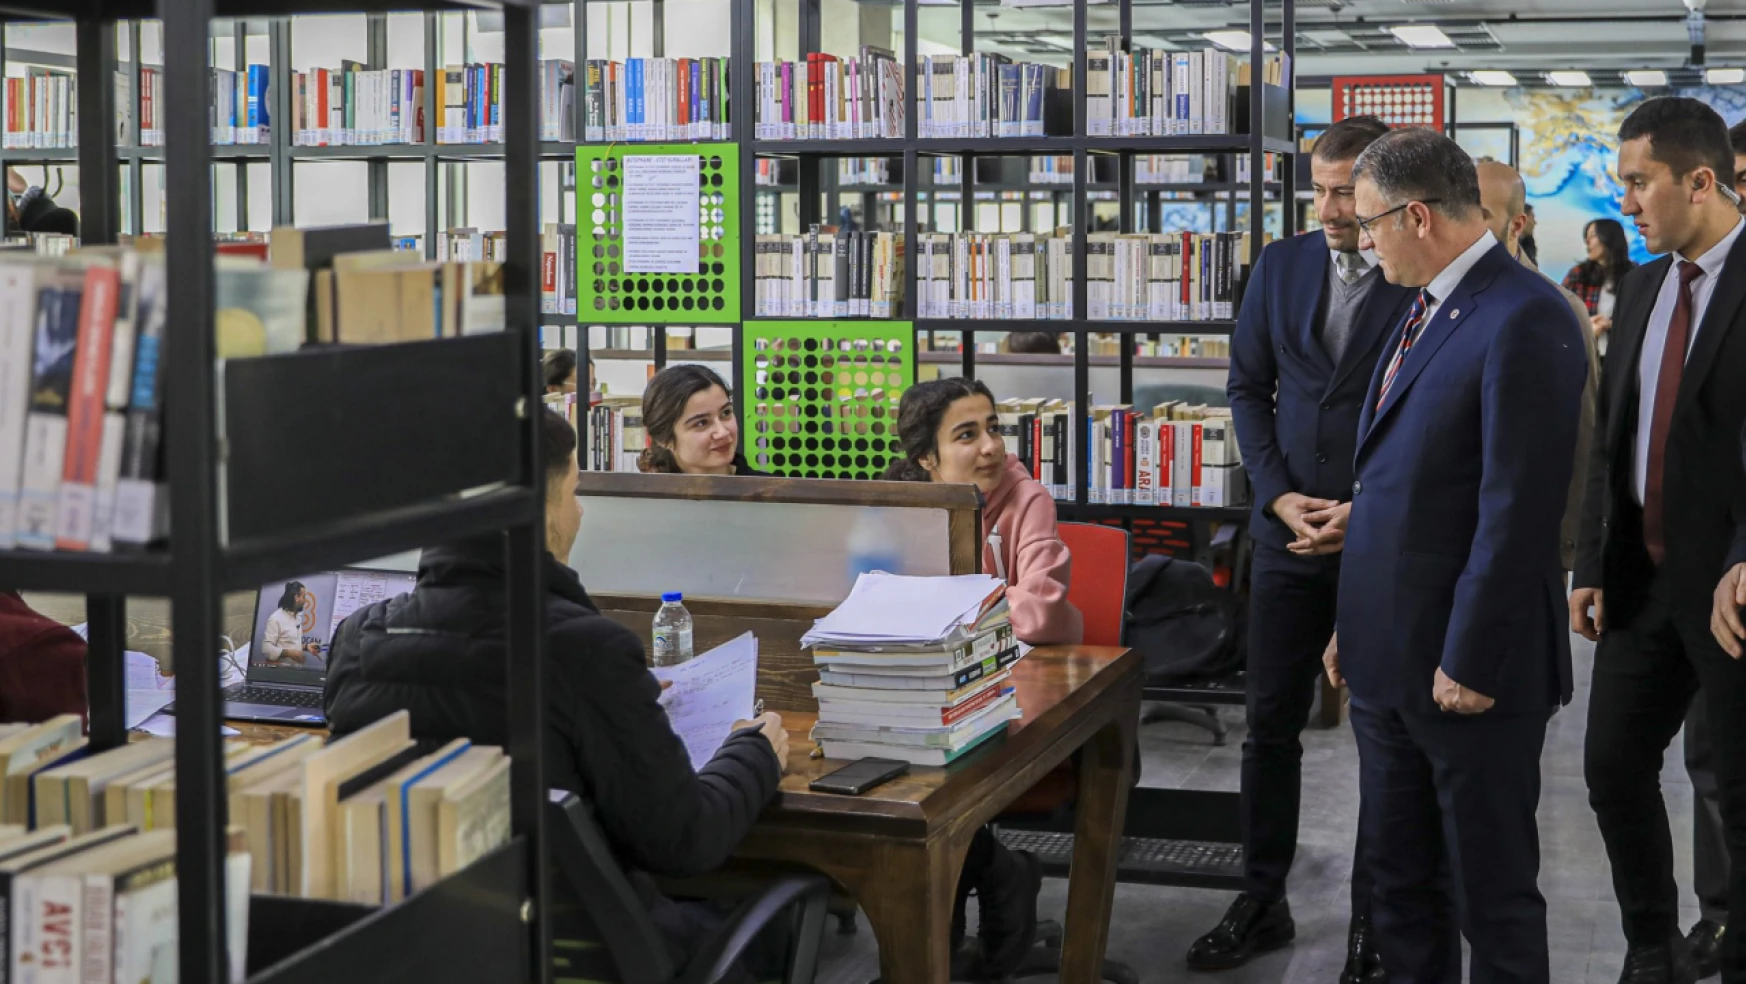 Vali Balcı'dan Kütüphane Ziyareti